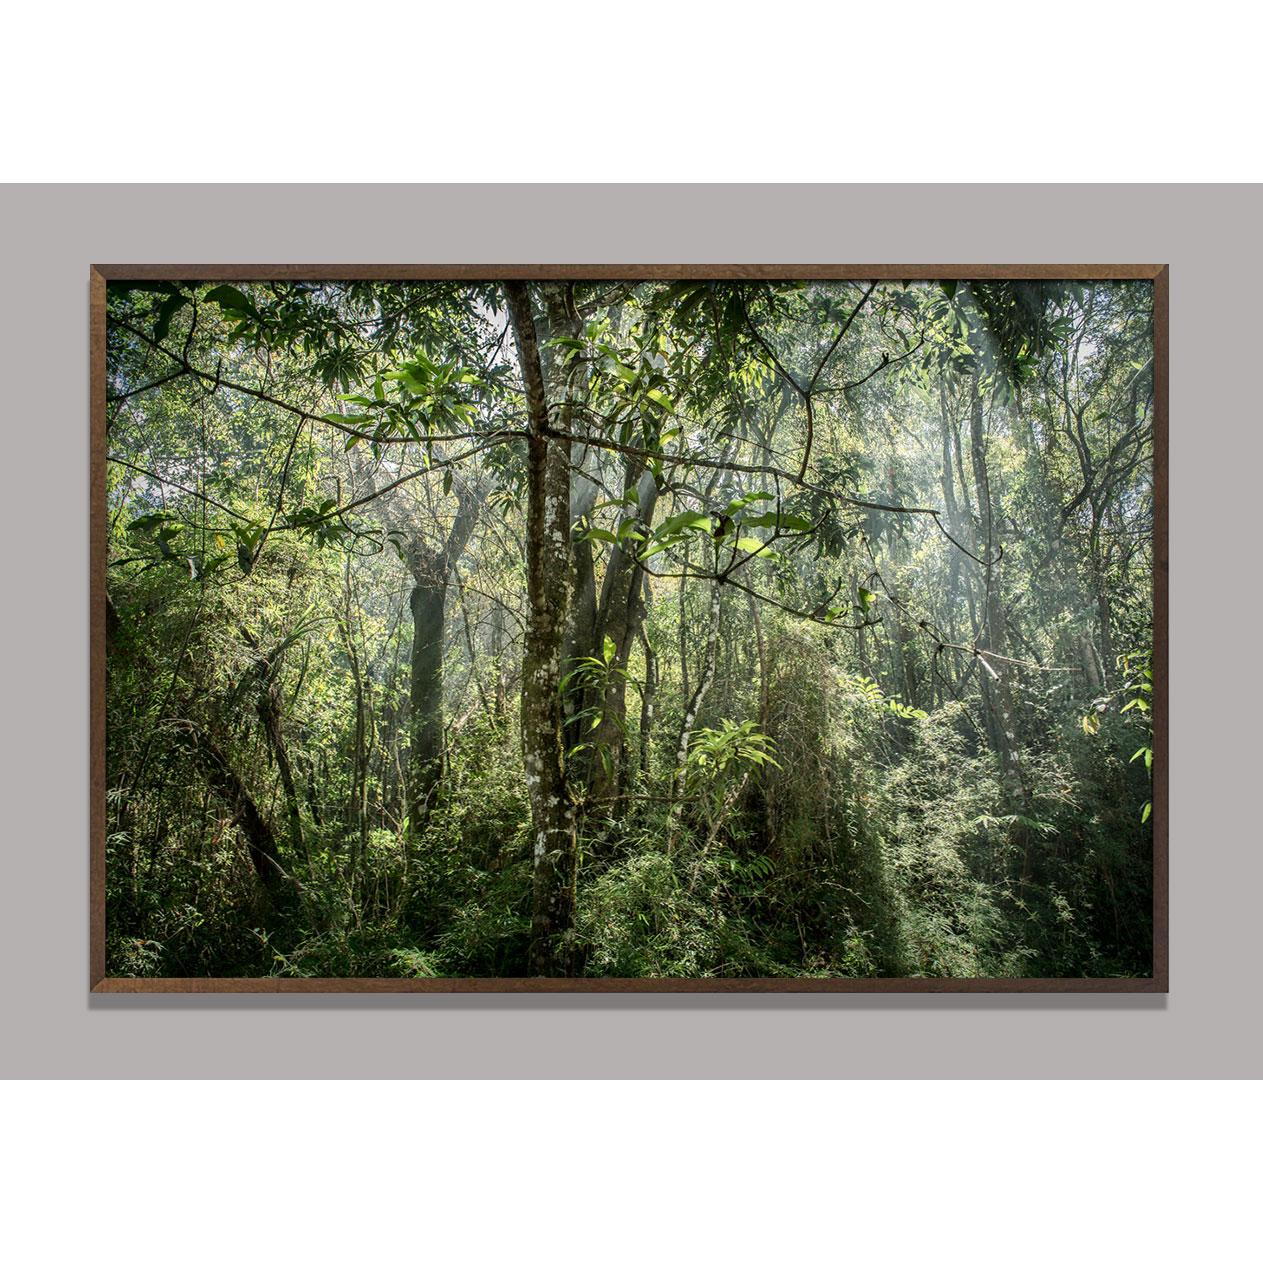 In Paradisum #8 Inside a Forest - Landscape Photography - Black Color Photograph by Daniel Mansur